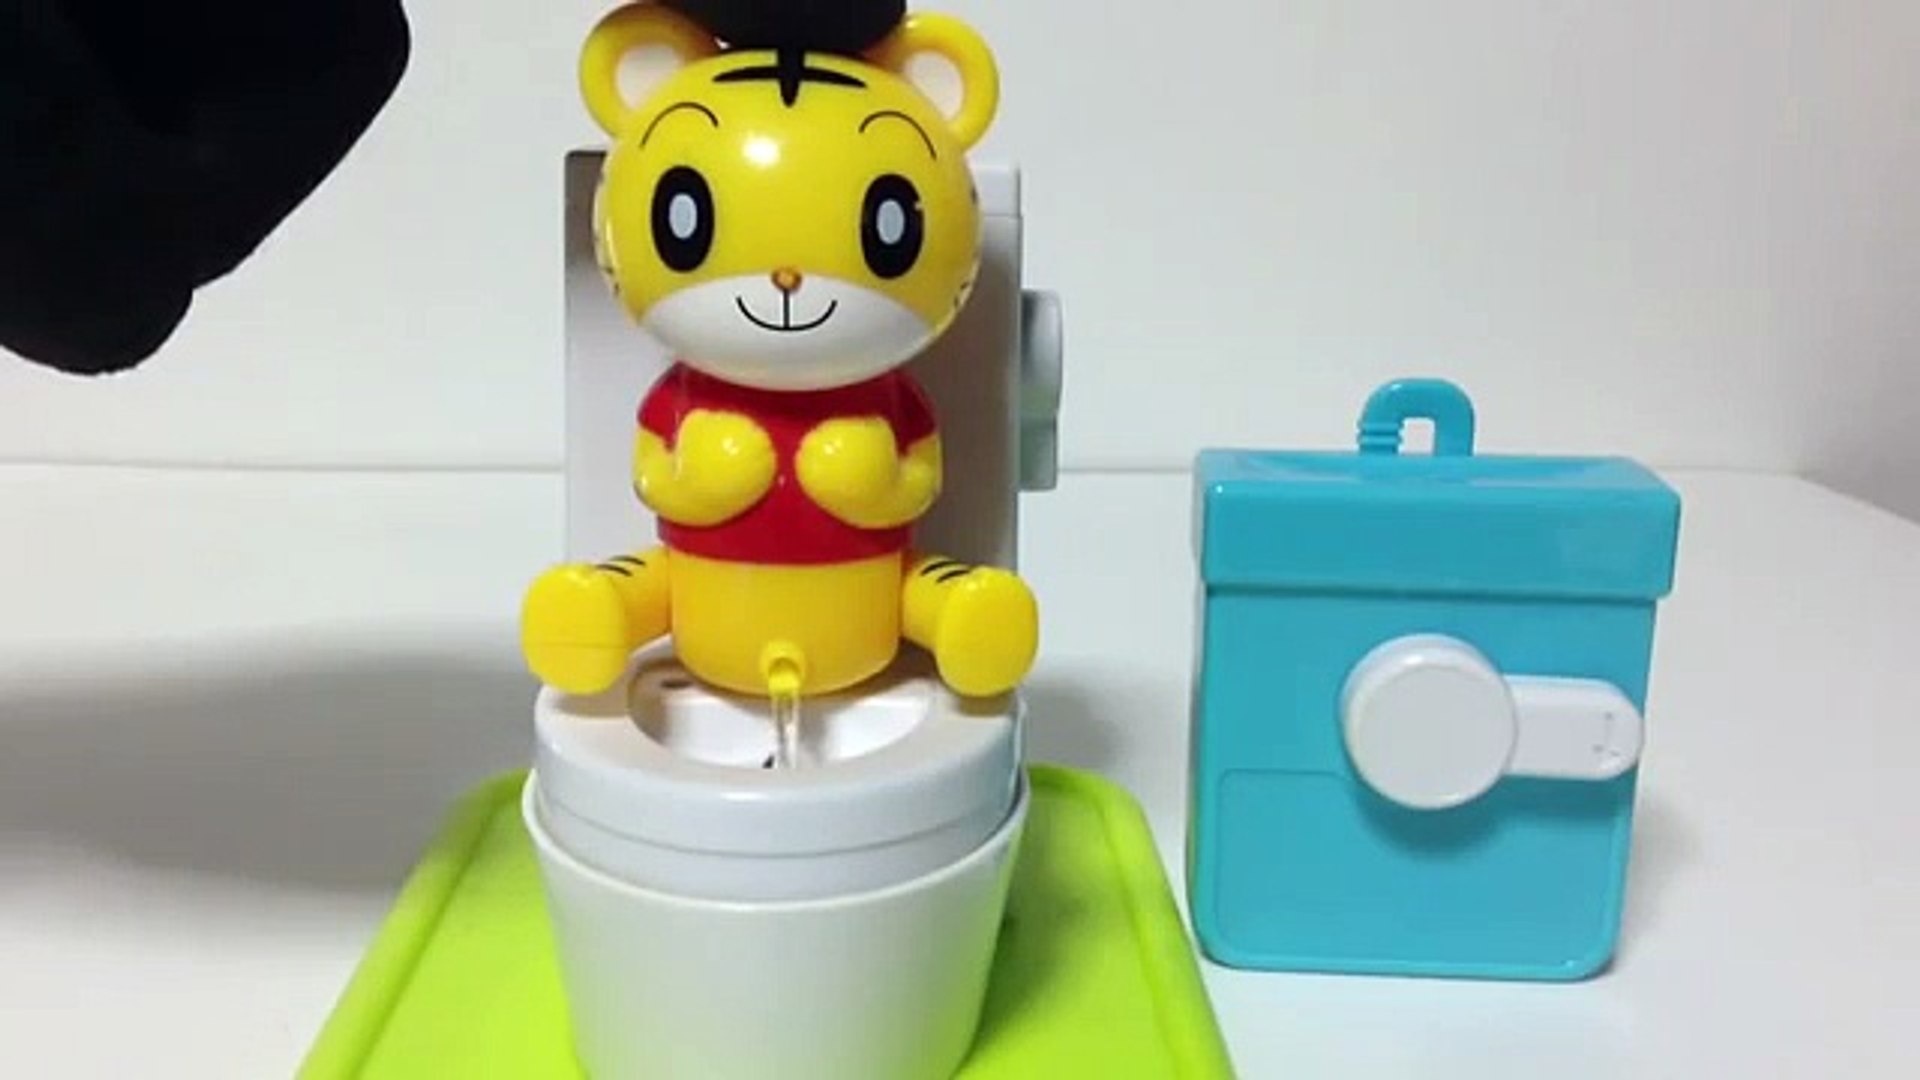 しまじろう トイレトレーニング Shimajiro Toilet Training Toy Dailymotion Video